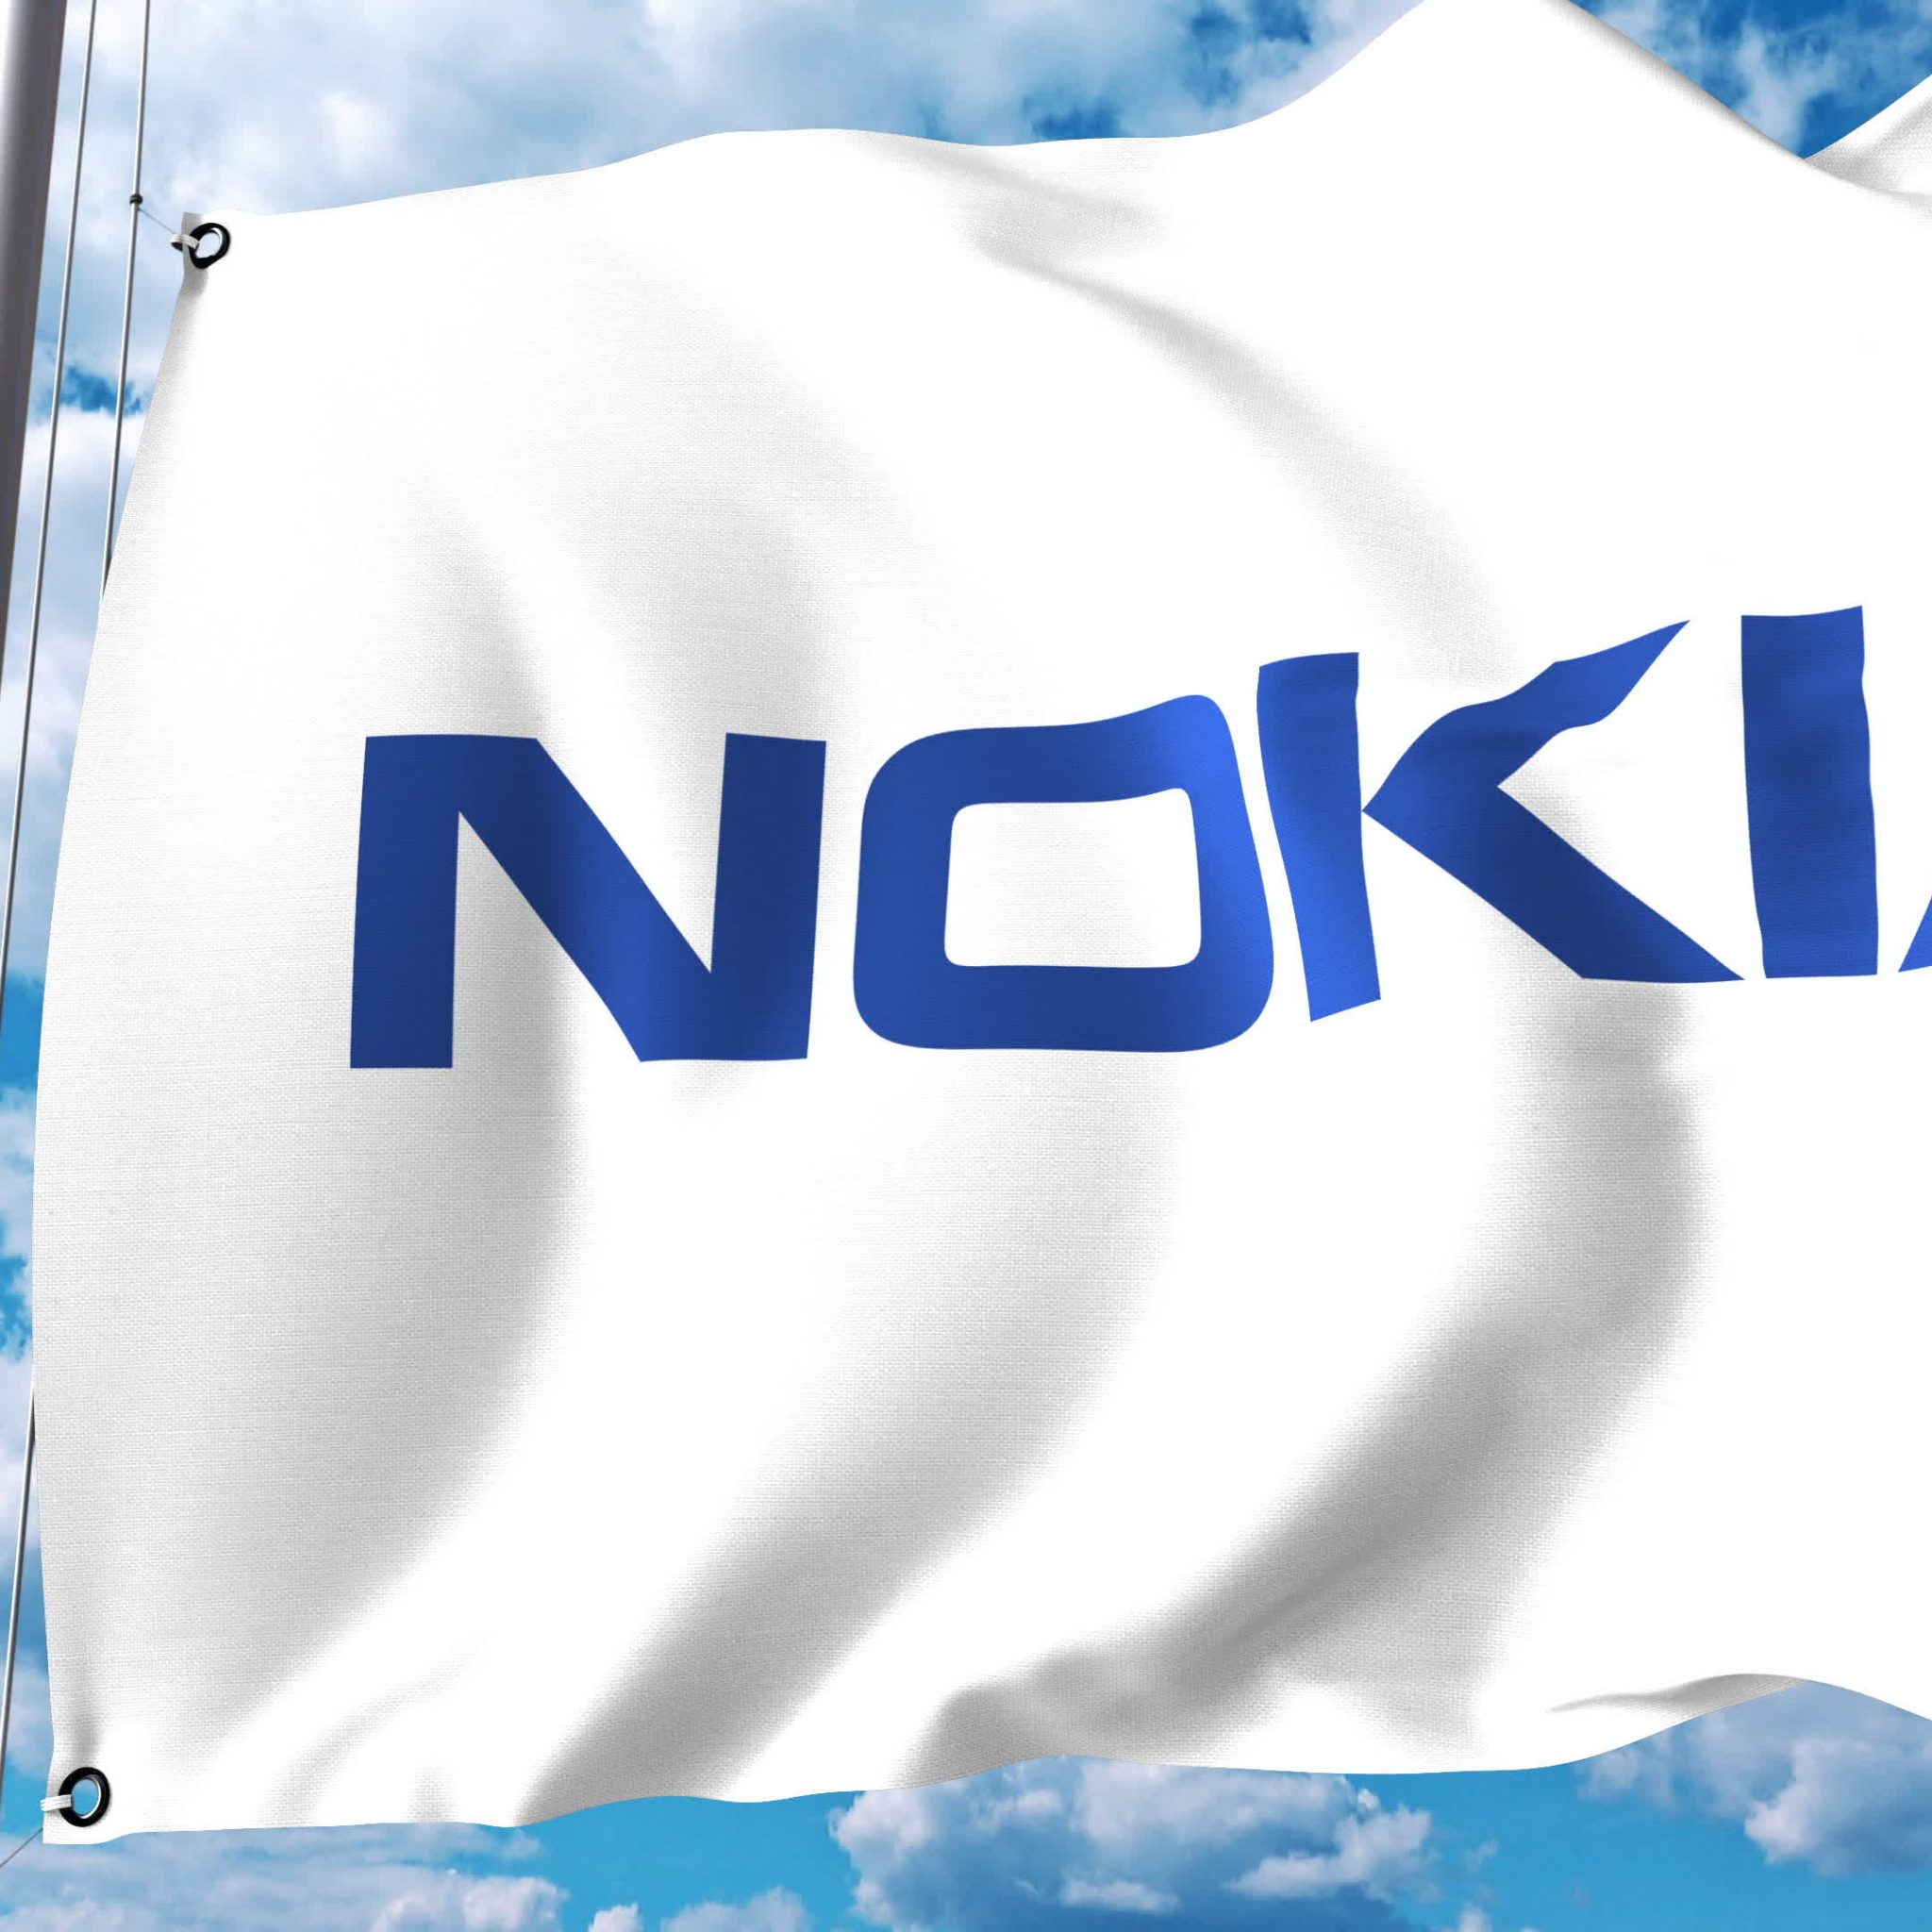 Telefonica Deutschland implementiert Nokia RAN Cloud-Technologie für 5G